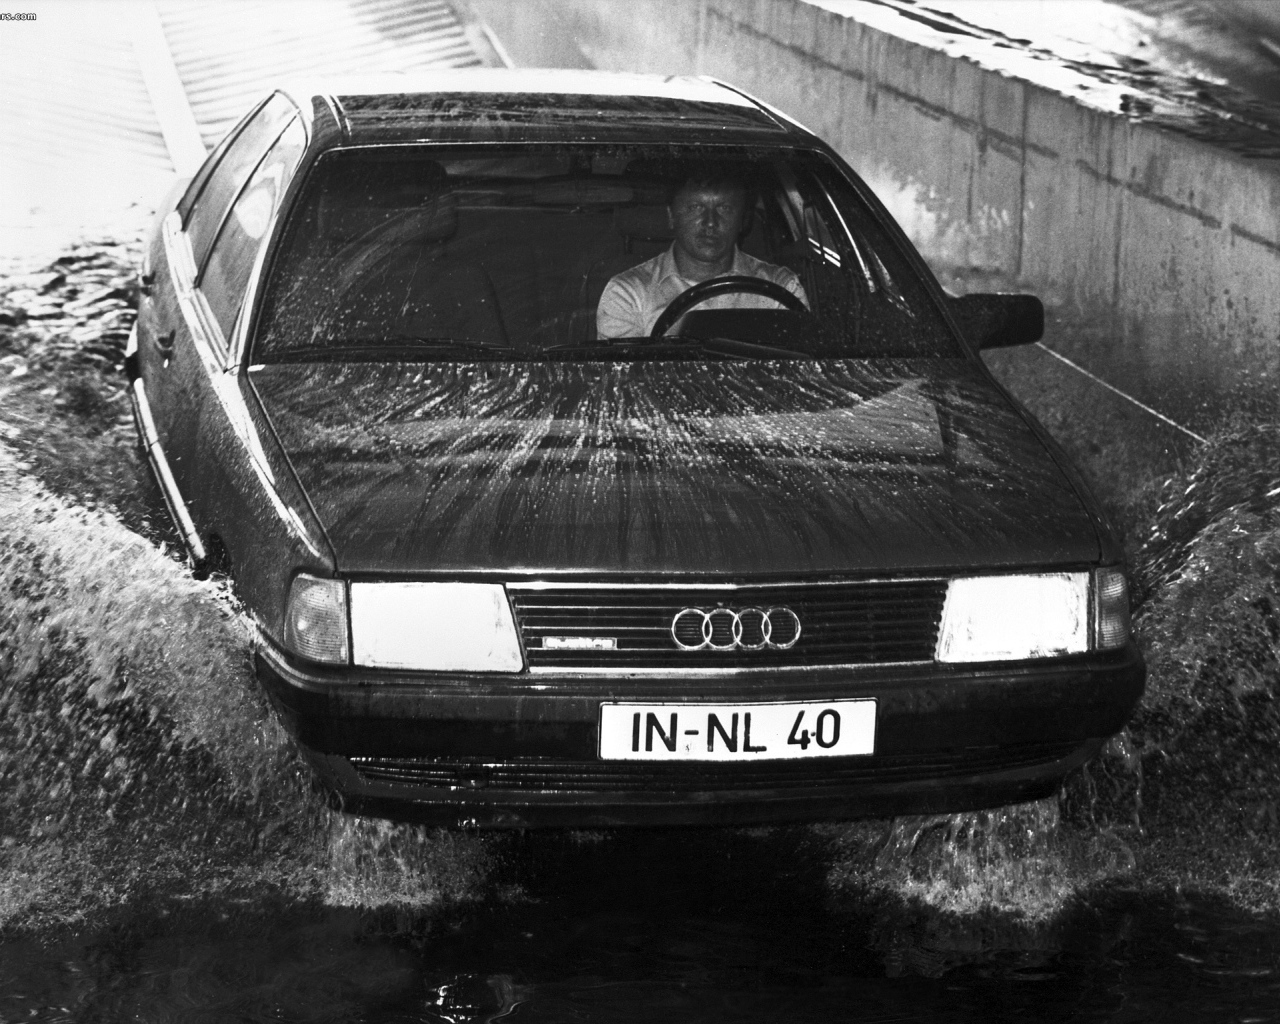 Автомобиль Audi 100 на дороге